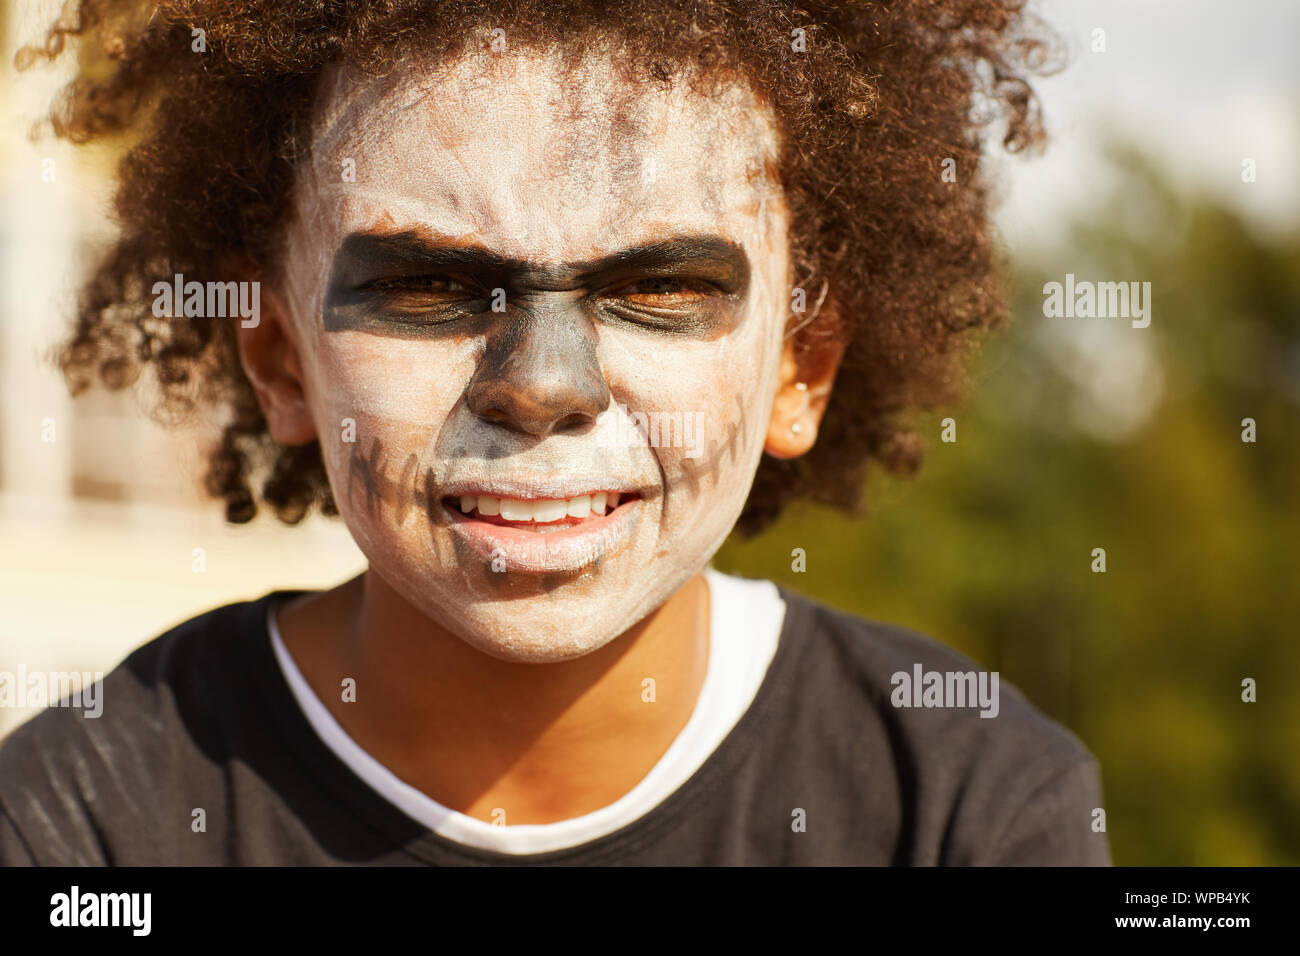 Kopf und Schultern Portrait von harten Afrikaner - Junge tragen Skelett Kostüm posiert im Freien auf Halloween, beleuchtet durch Sonnenlicht Stockfoto